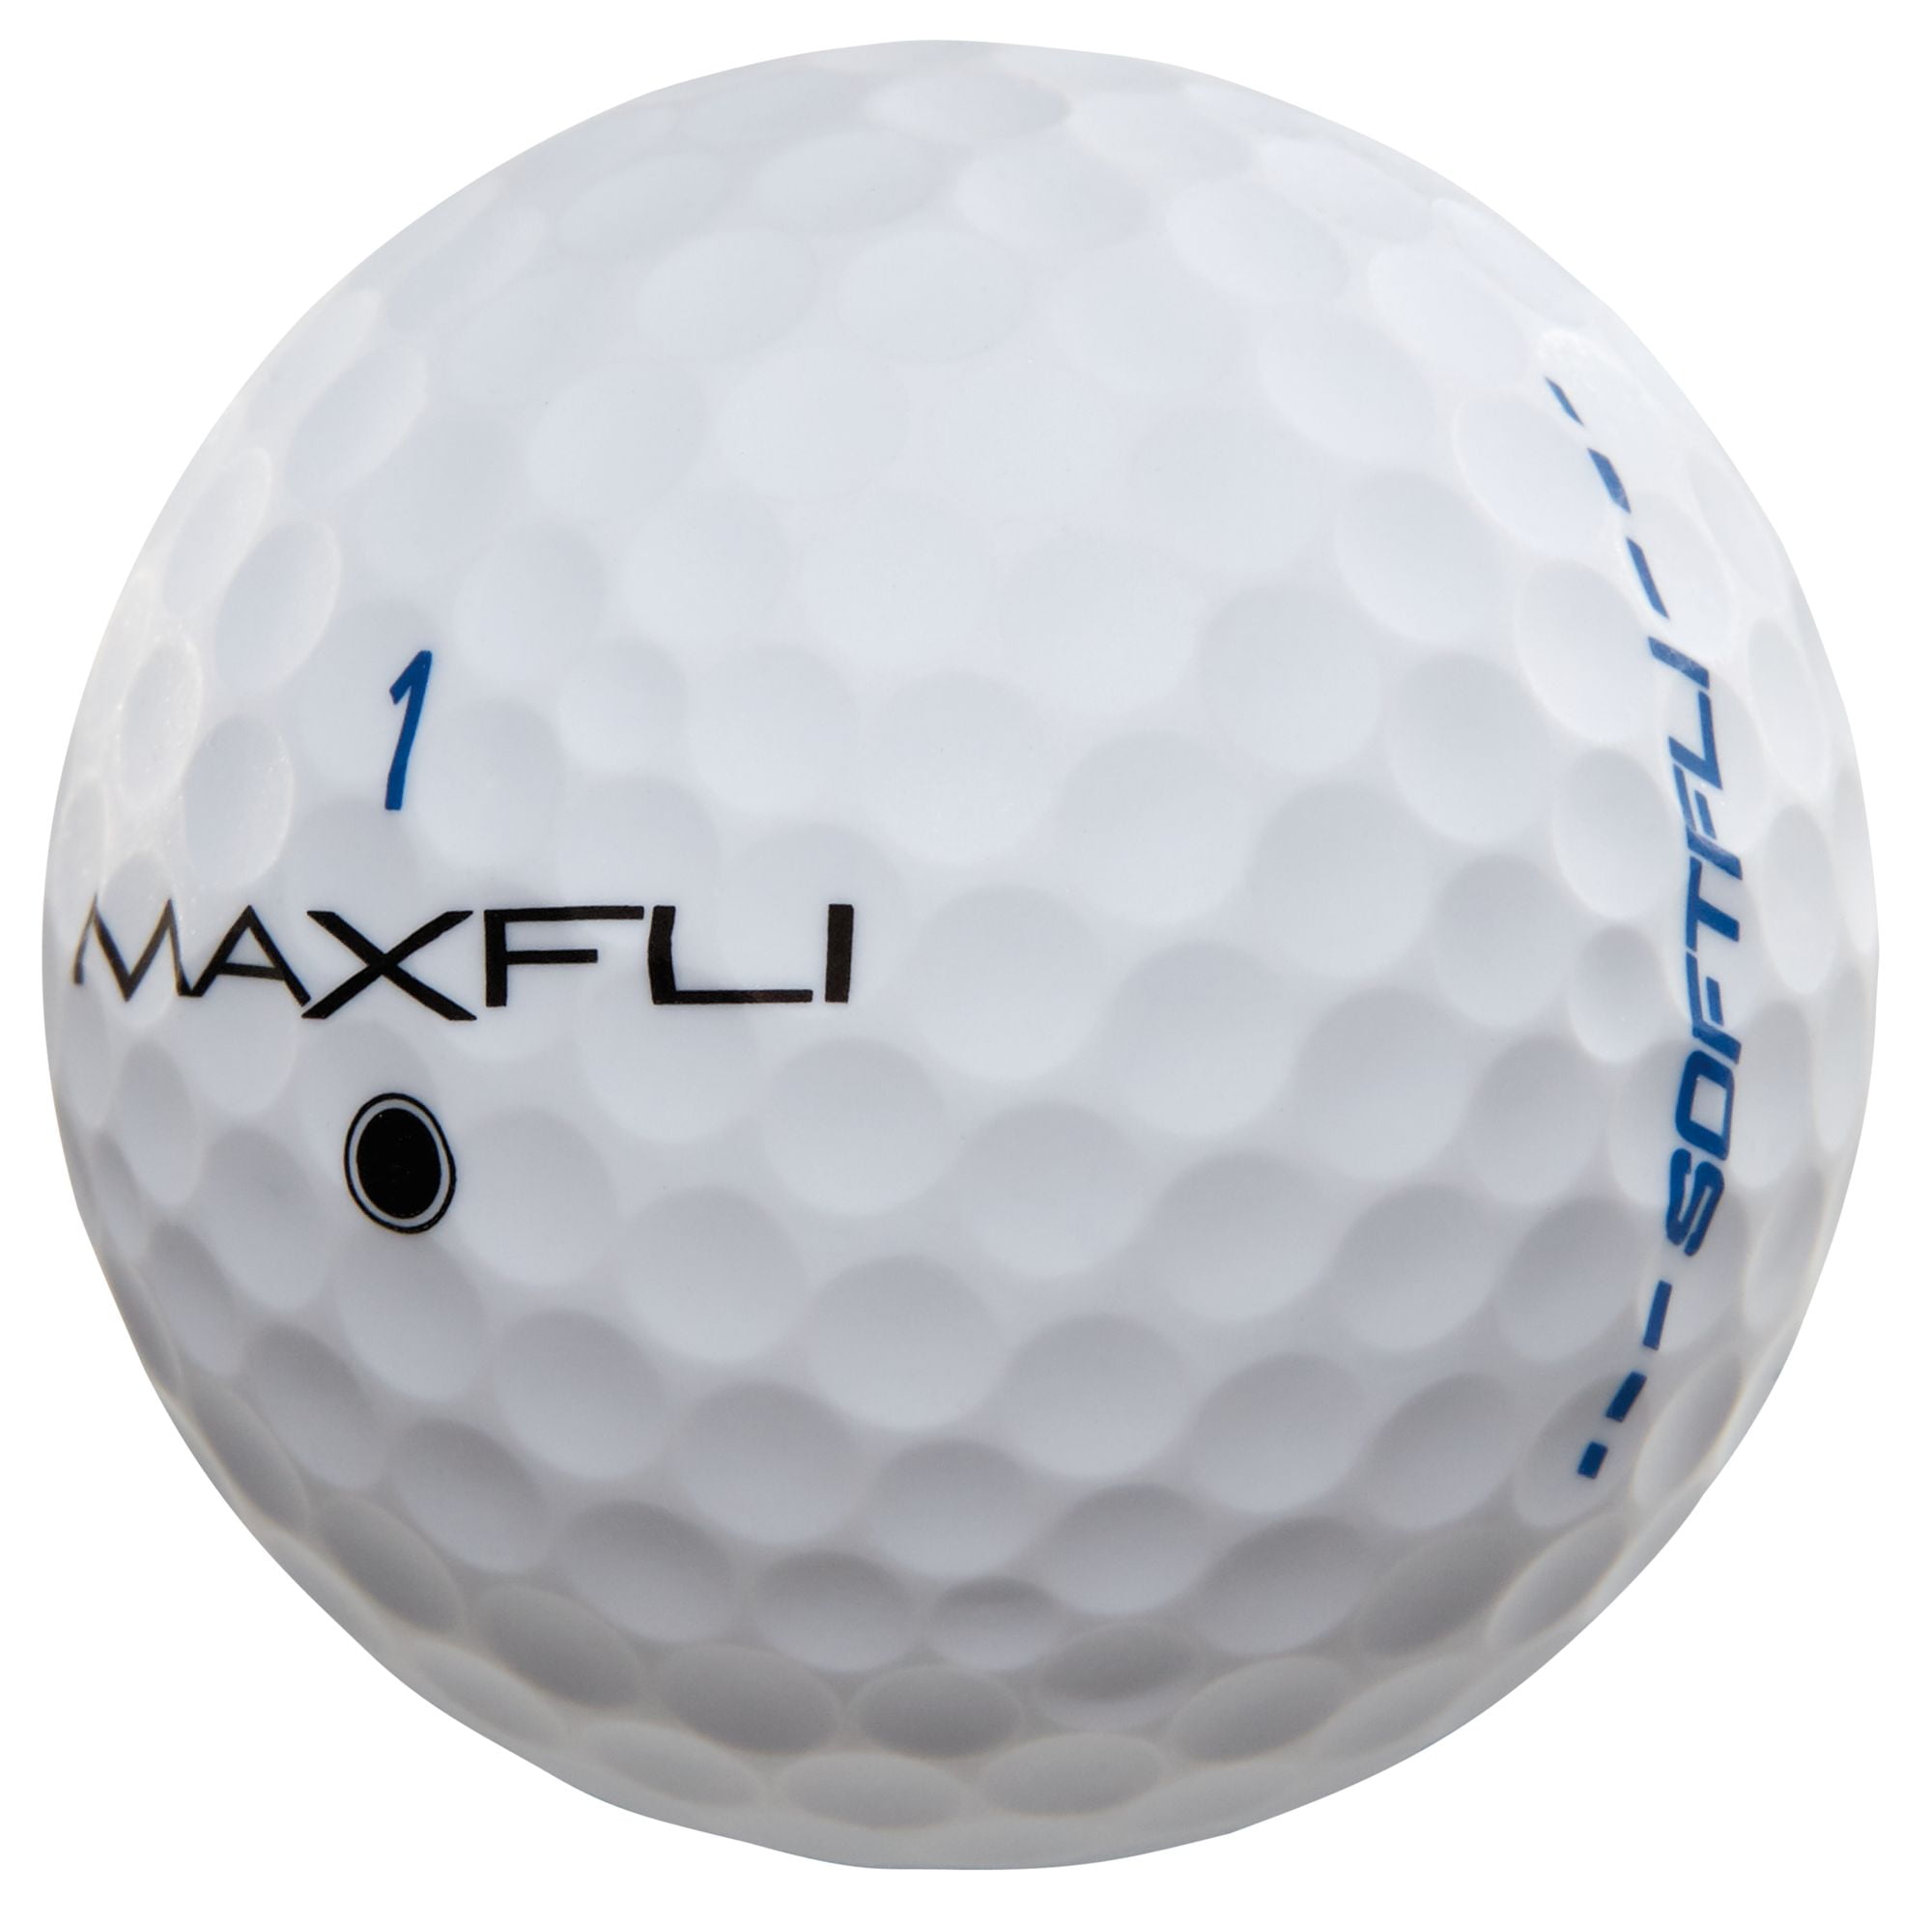 maxfli tour x golf balls australia